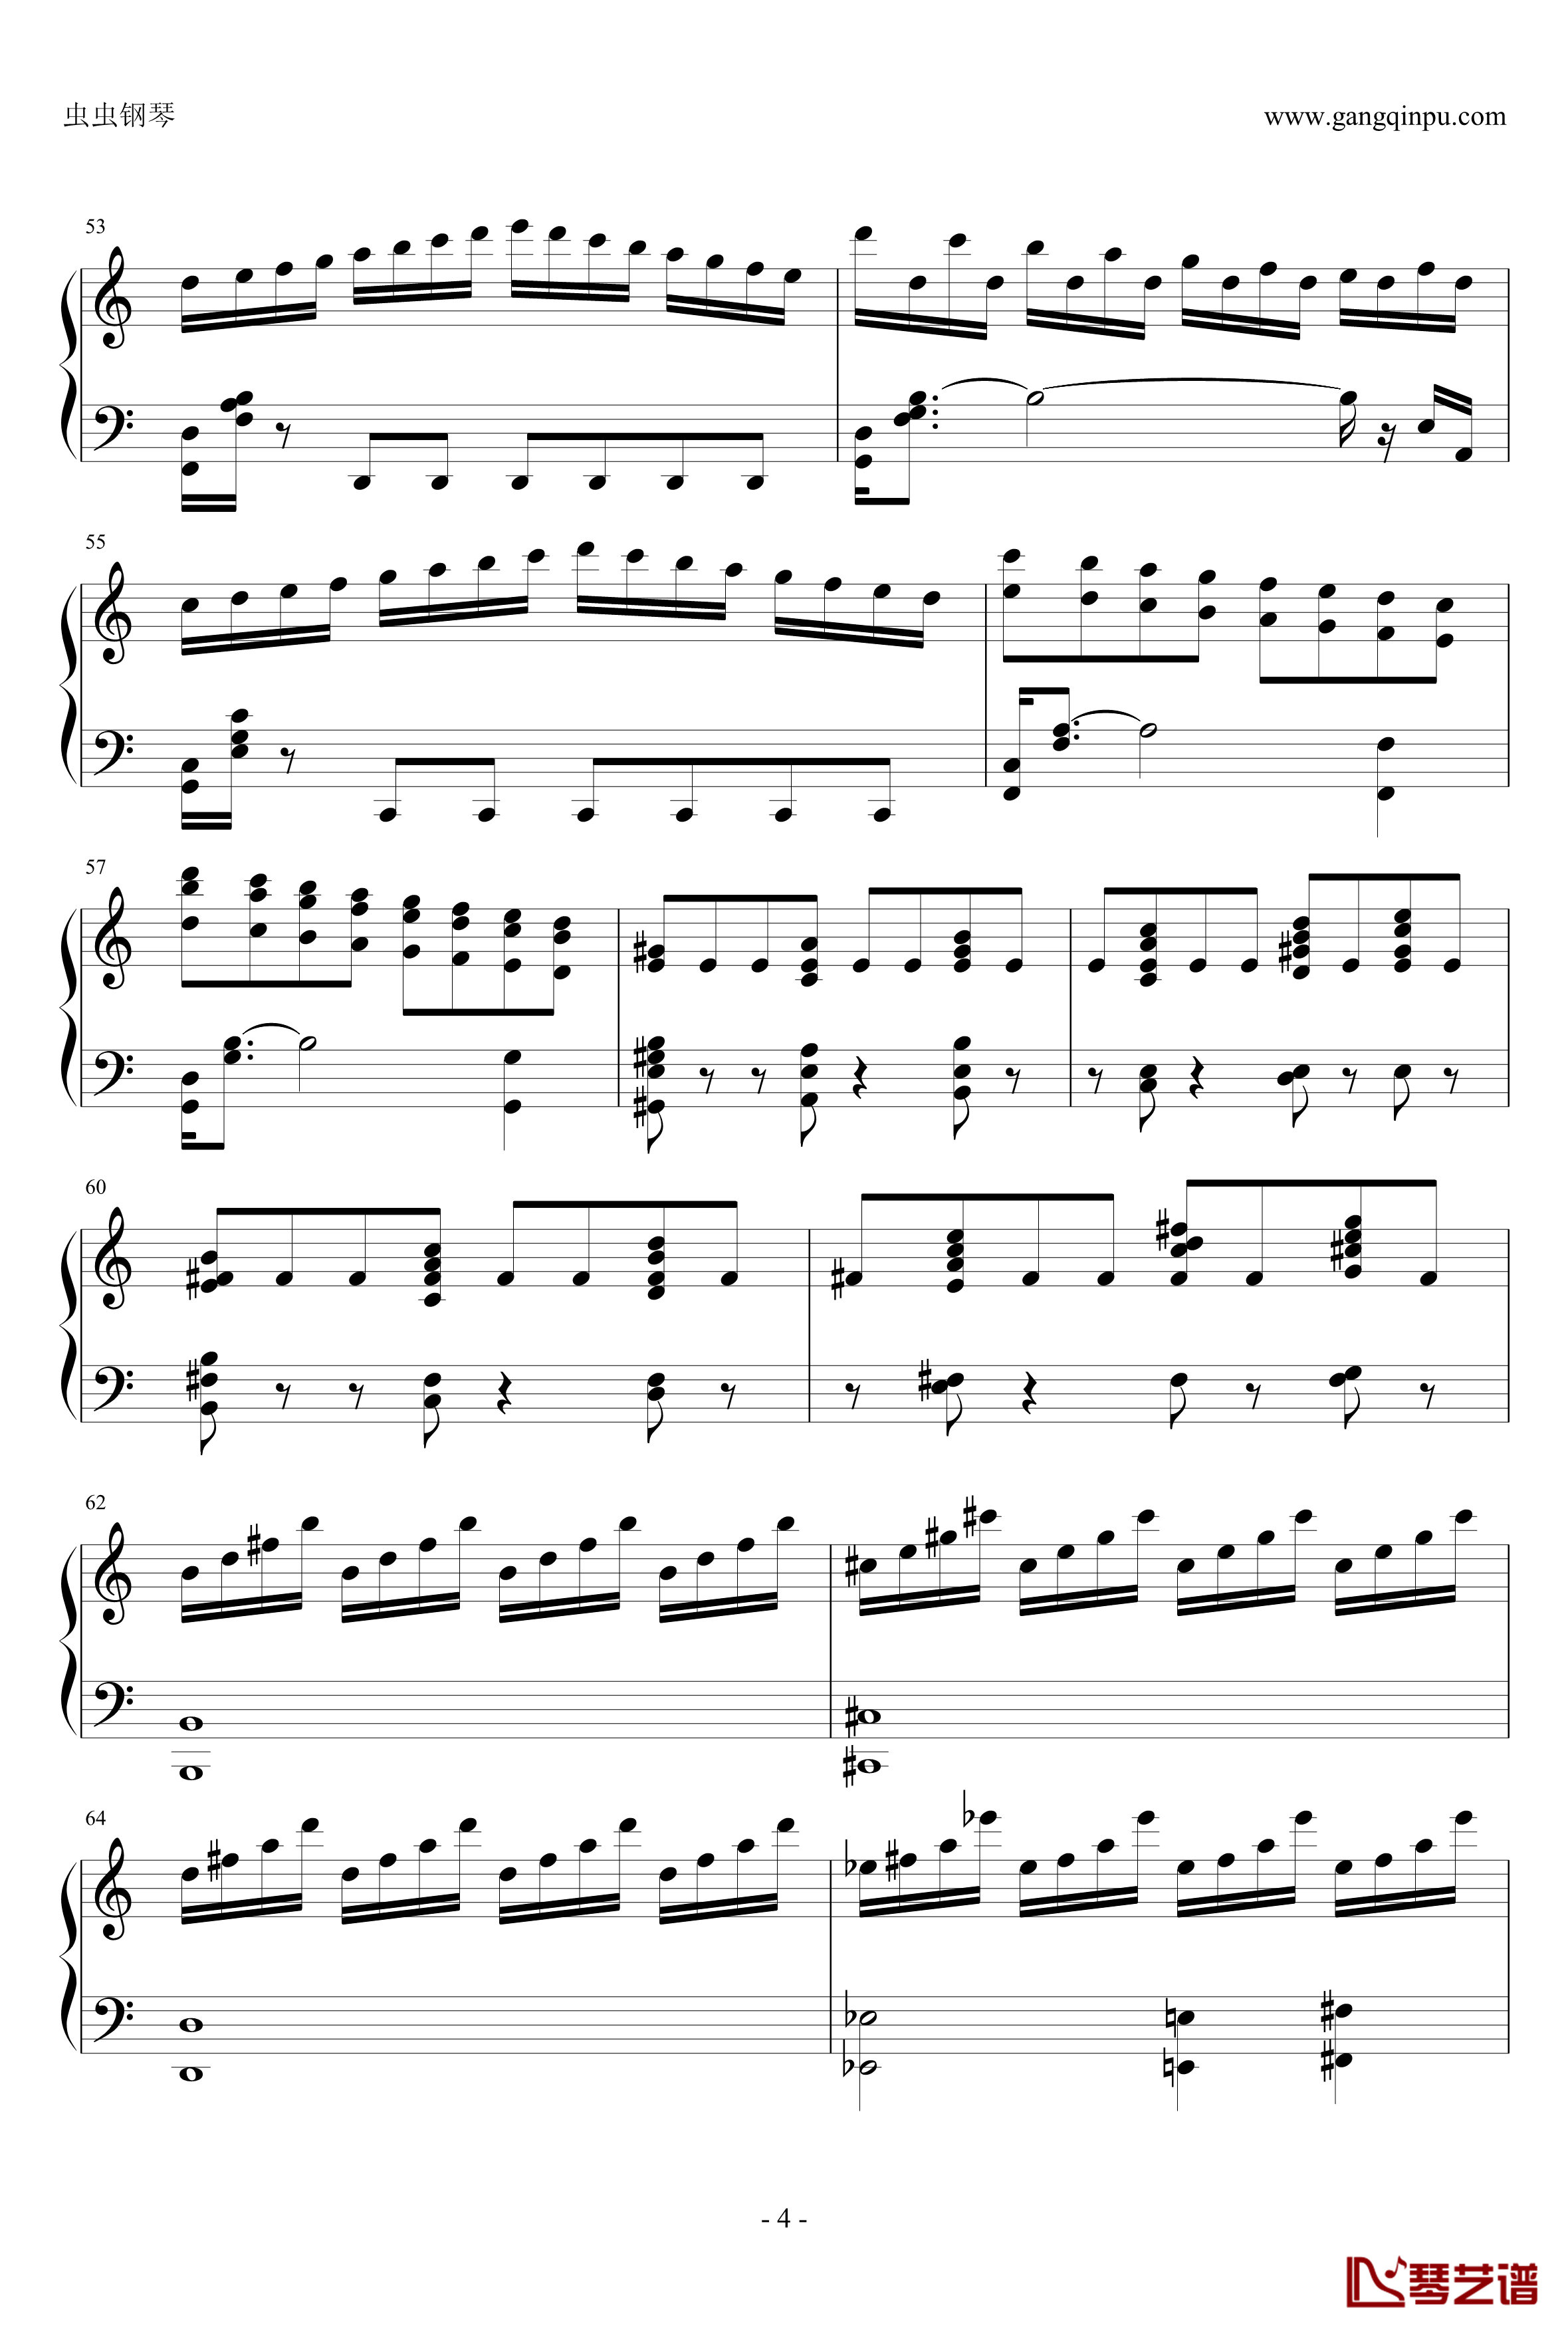 贝多芬V3奏鸣曲钢琴谱-劲舞团改编-劲舞团4